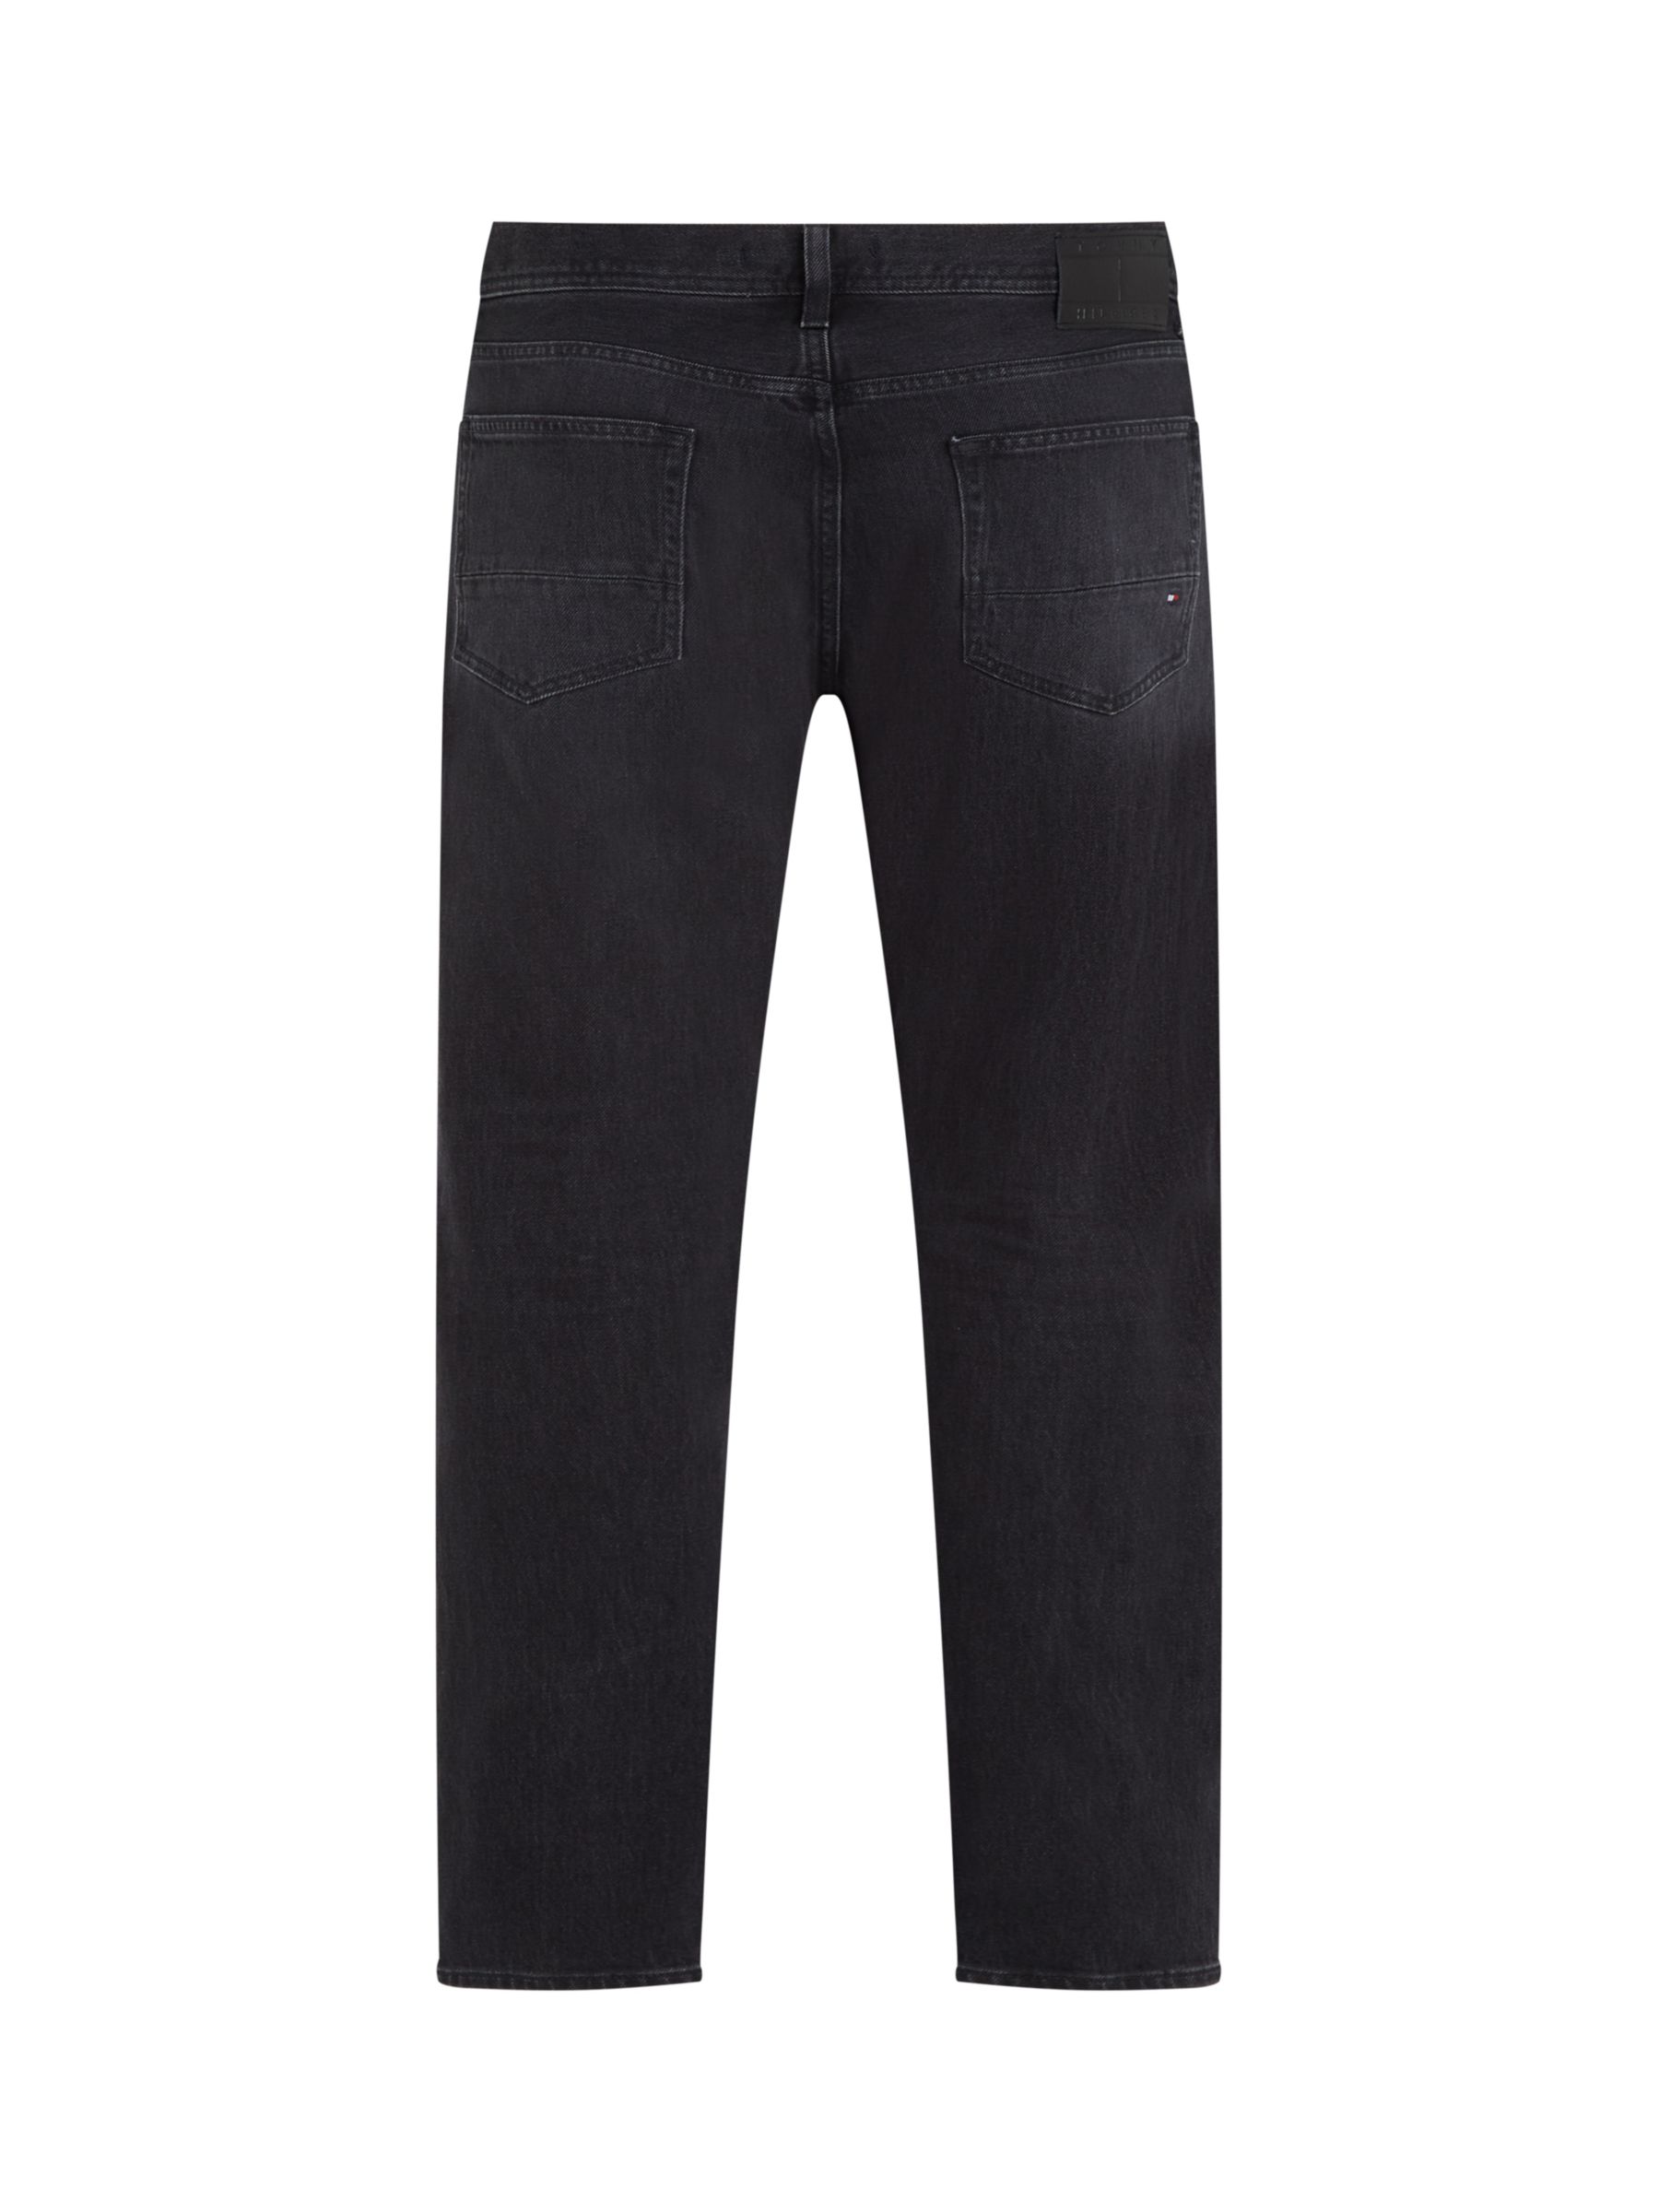 Buy Tommy Hilfiger Mercer Jeans, Black Online at johnlewis.com